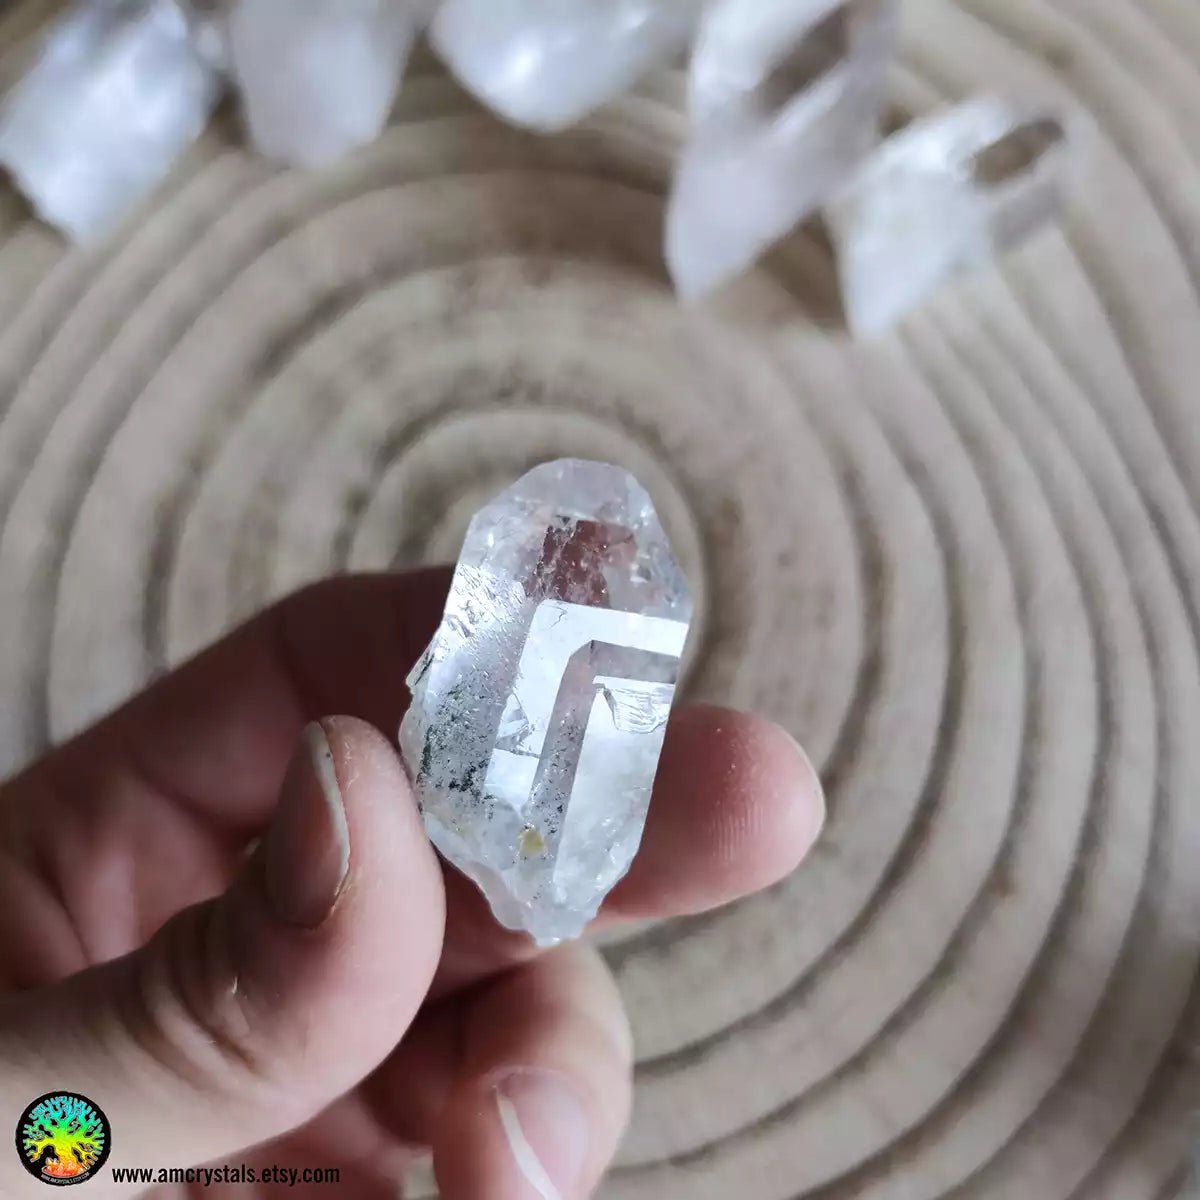 Cuarzo transparente con inclusiones de Clorita nr.6 - Cristales Anima Mundi